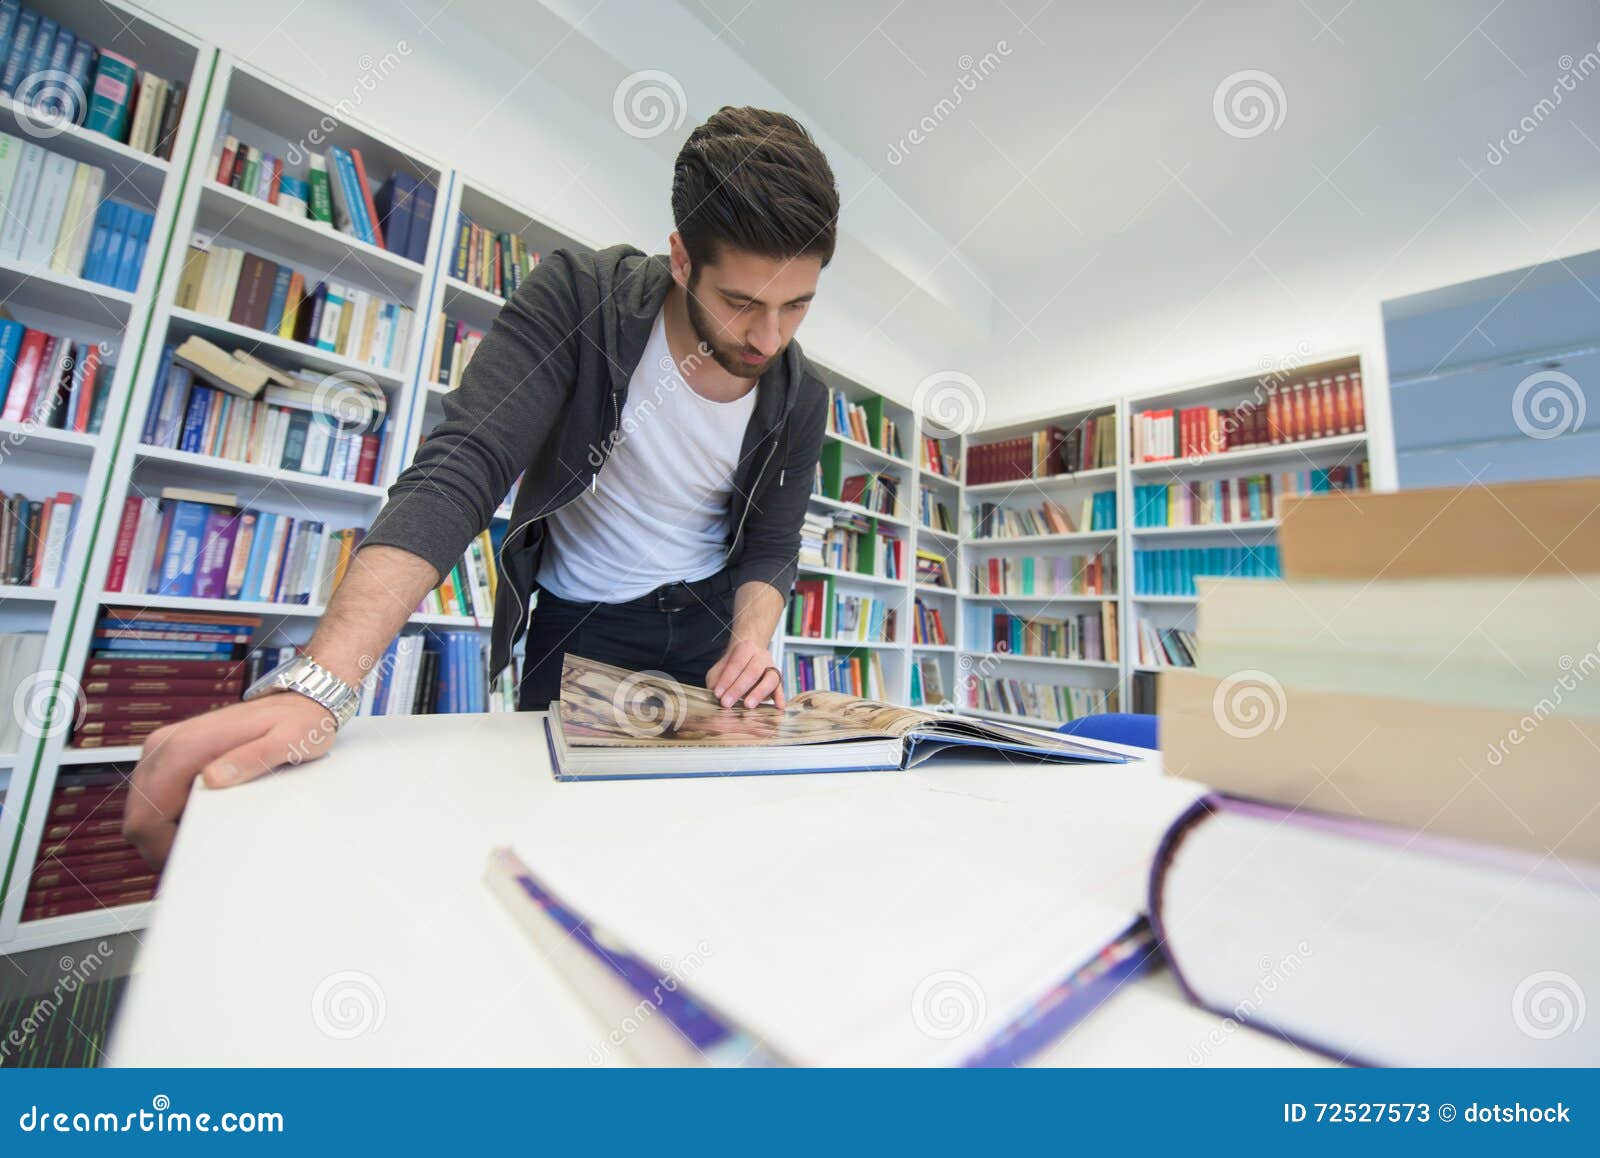 Она сидит в библиотеке. Студенты в библиотеке. Студенты занимаются в библиотеке. Мужчина в библиотеке. Заниматься в библиотеке.